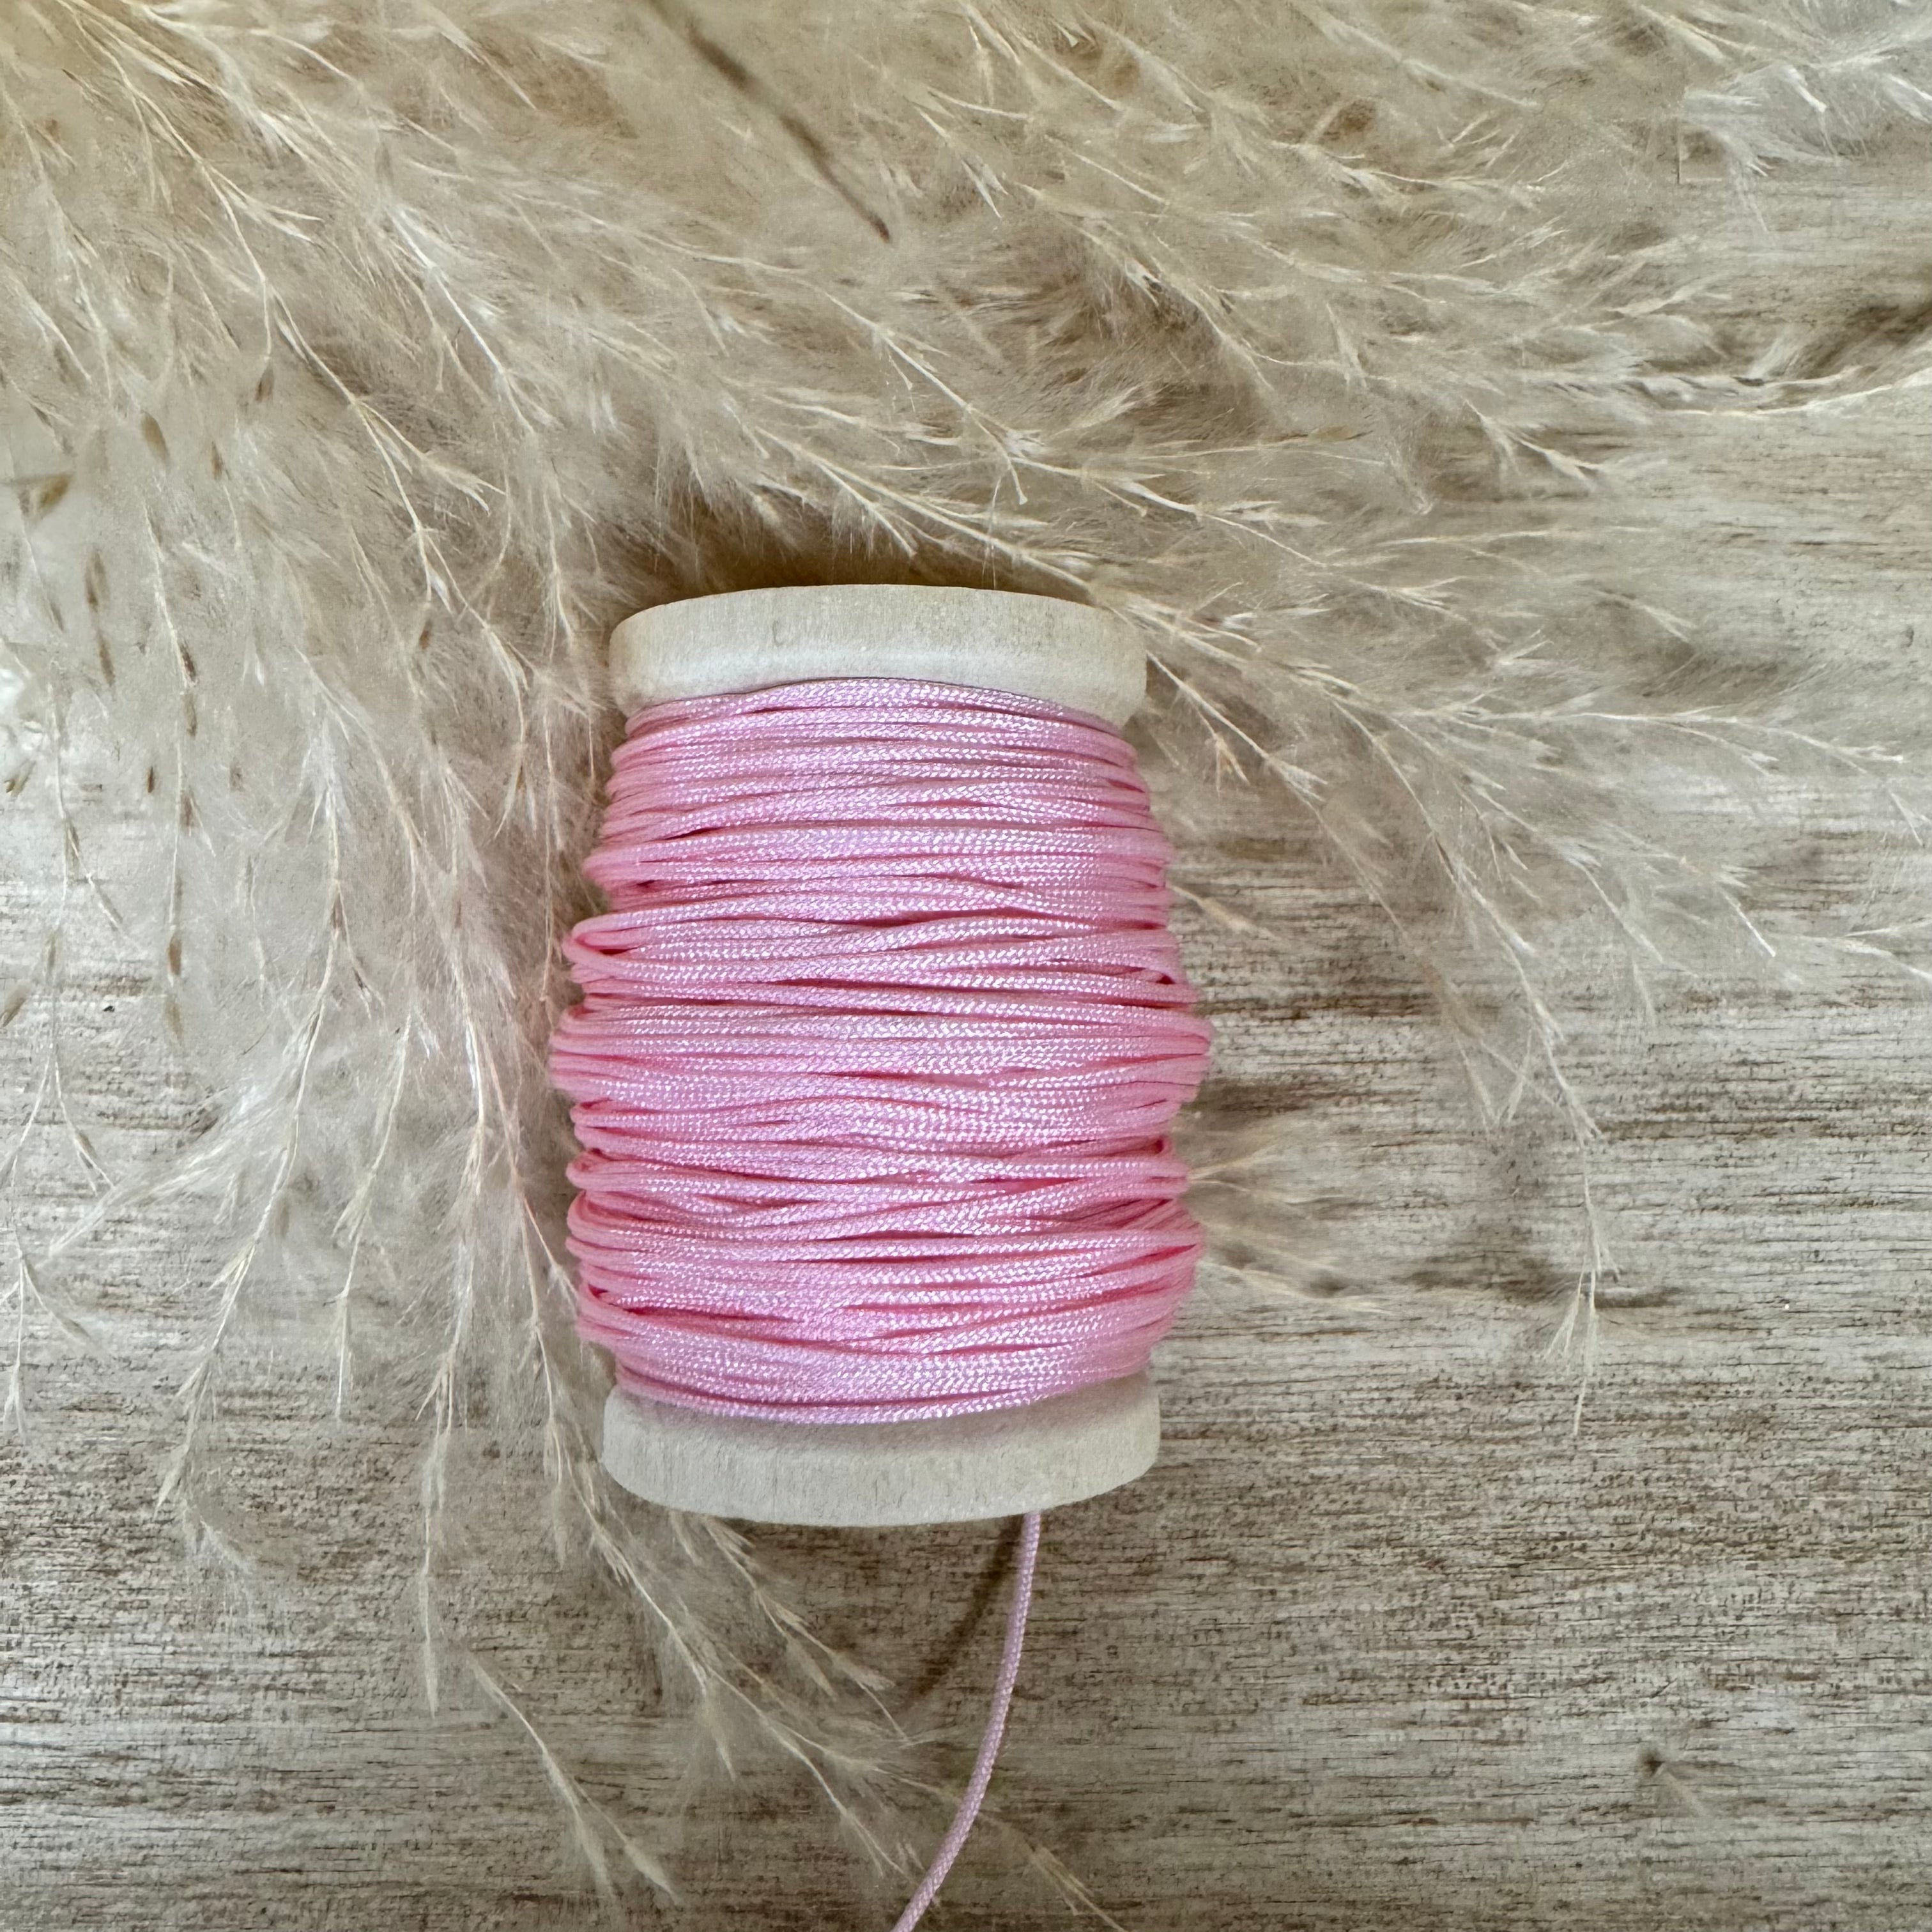 Rosa ungewachstes Nylon Garn 1 mm für Makramee Schmuckherstellung  DIY